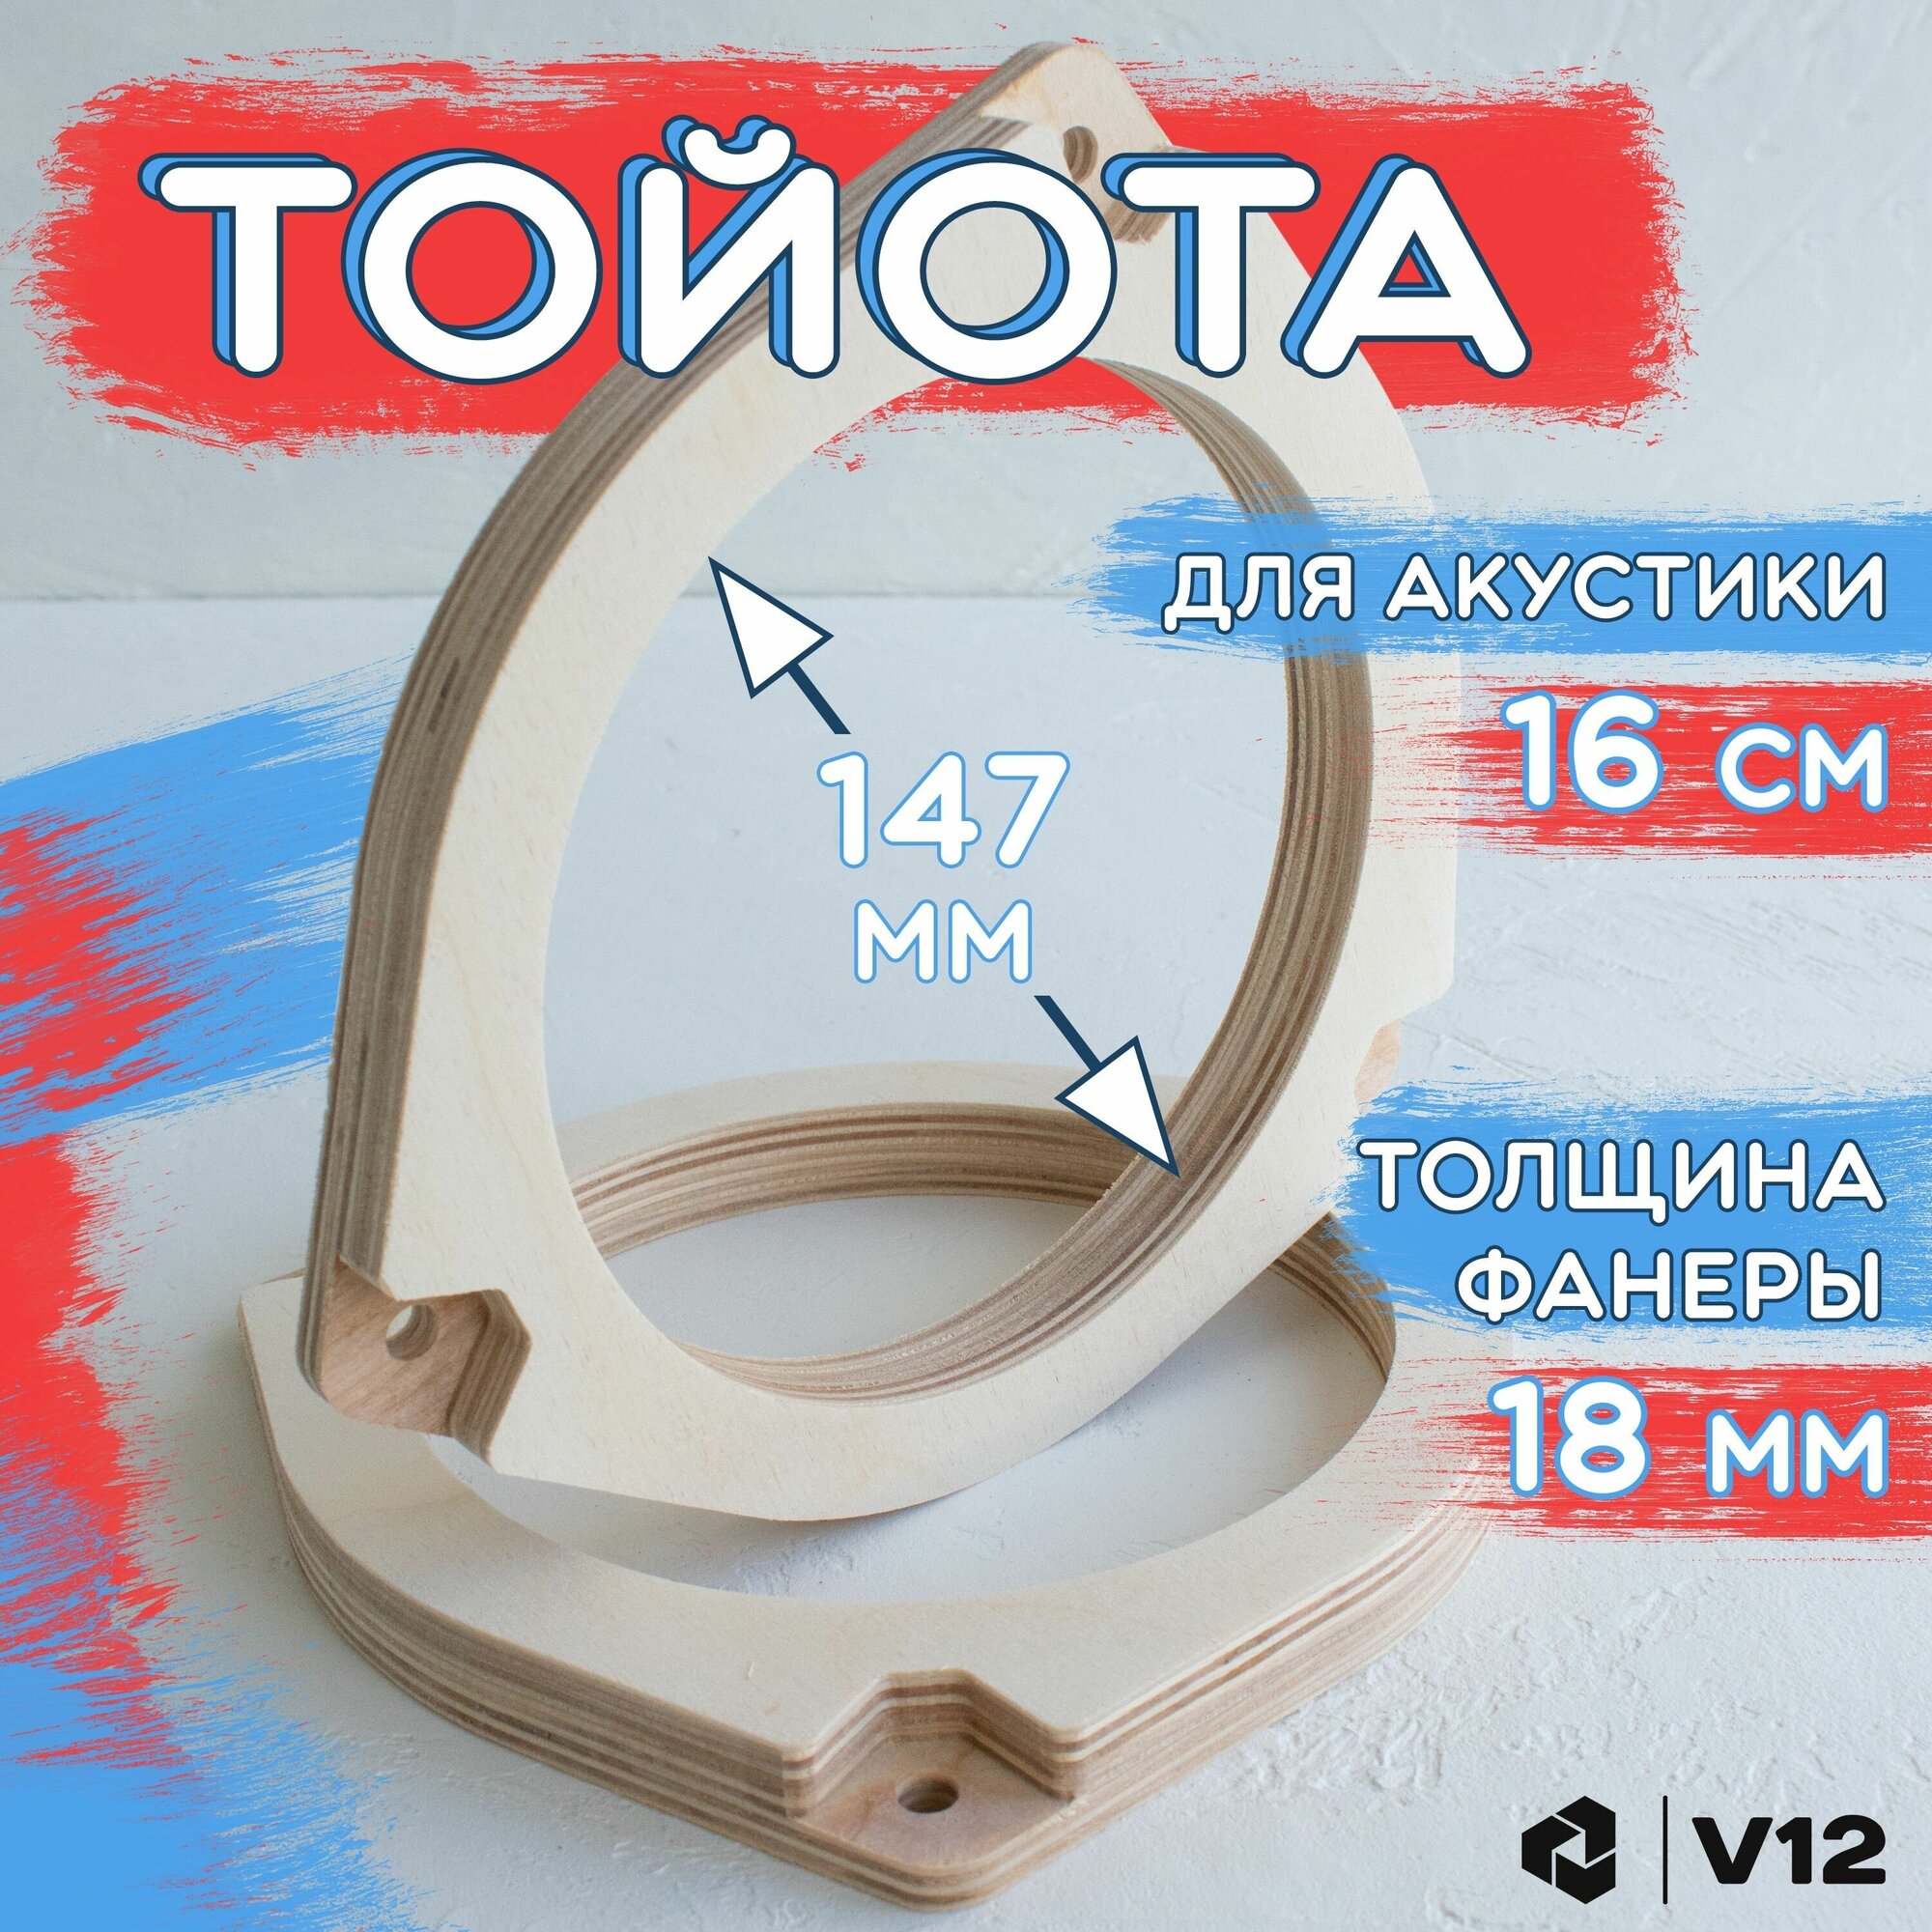 Проставочные кольца для установки динамиков (акустики) 16-16.5 см. TOYOTA(тойота) 2шт. фанера проставки